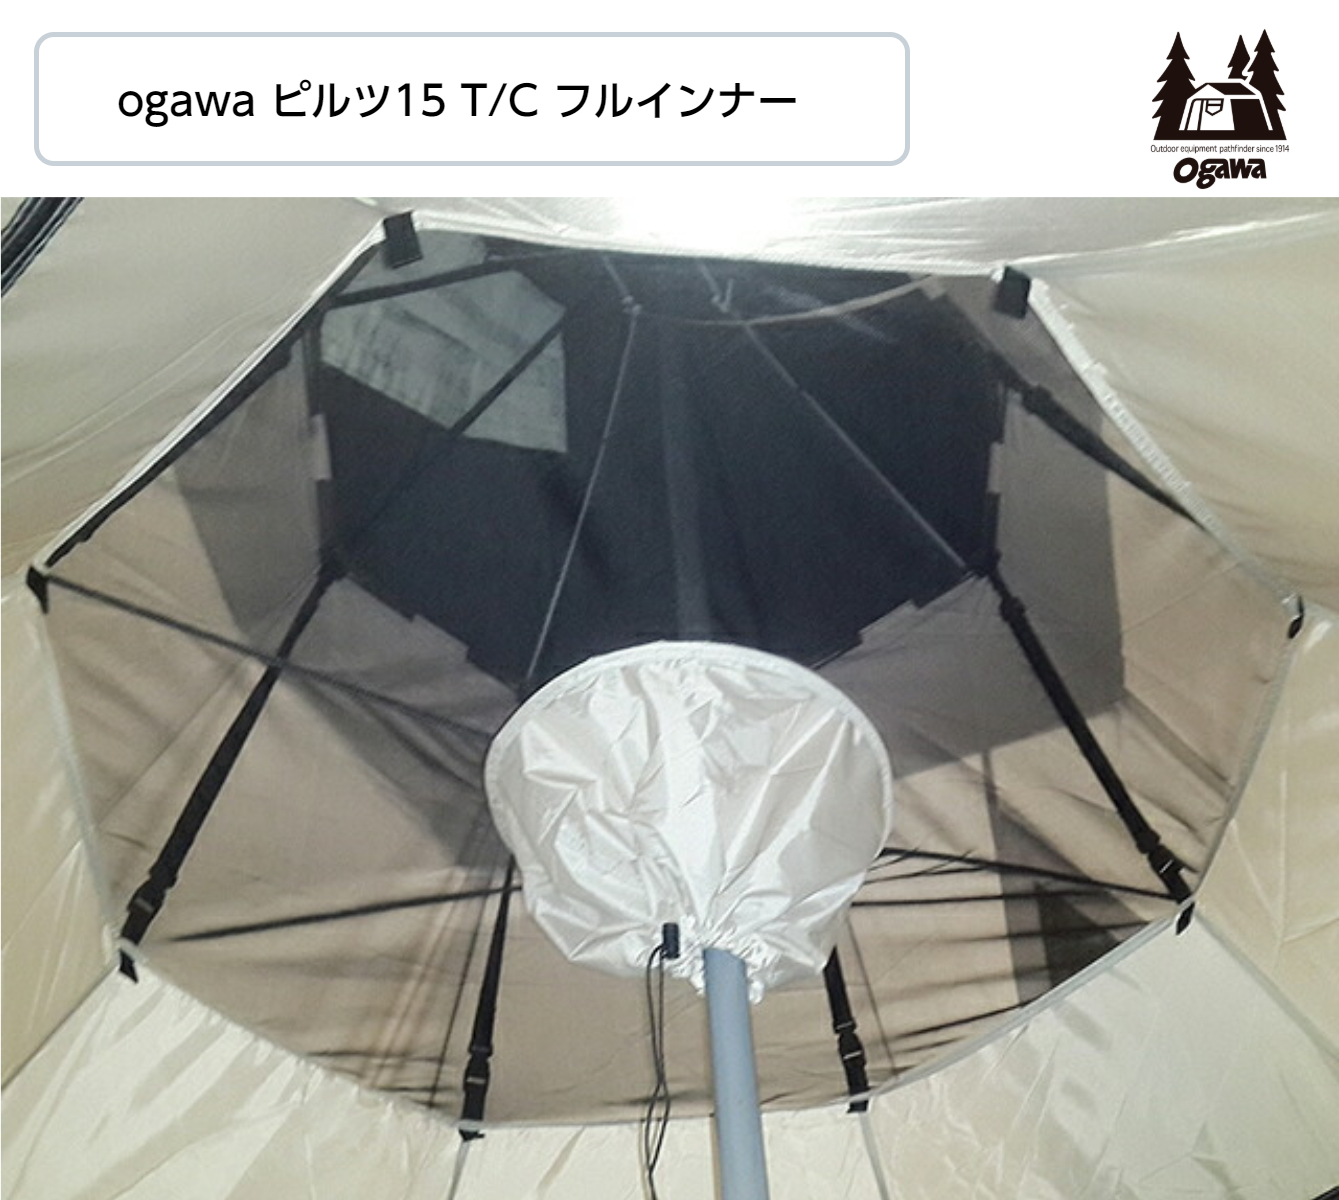 Ogawa インナー 3572 オガワキャンパル T C フルインナー テント ピルツ15 オガワ アウトドア 小川 ピルツ15 小川キャンパル 小川 アウトドア Hinaストアシングルルーフ構造のピルツに取り付けることで虫の侵入を防ぎ 寒い時期には暖かく過ごすことが可能になります